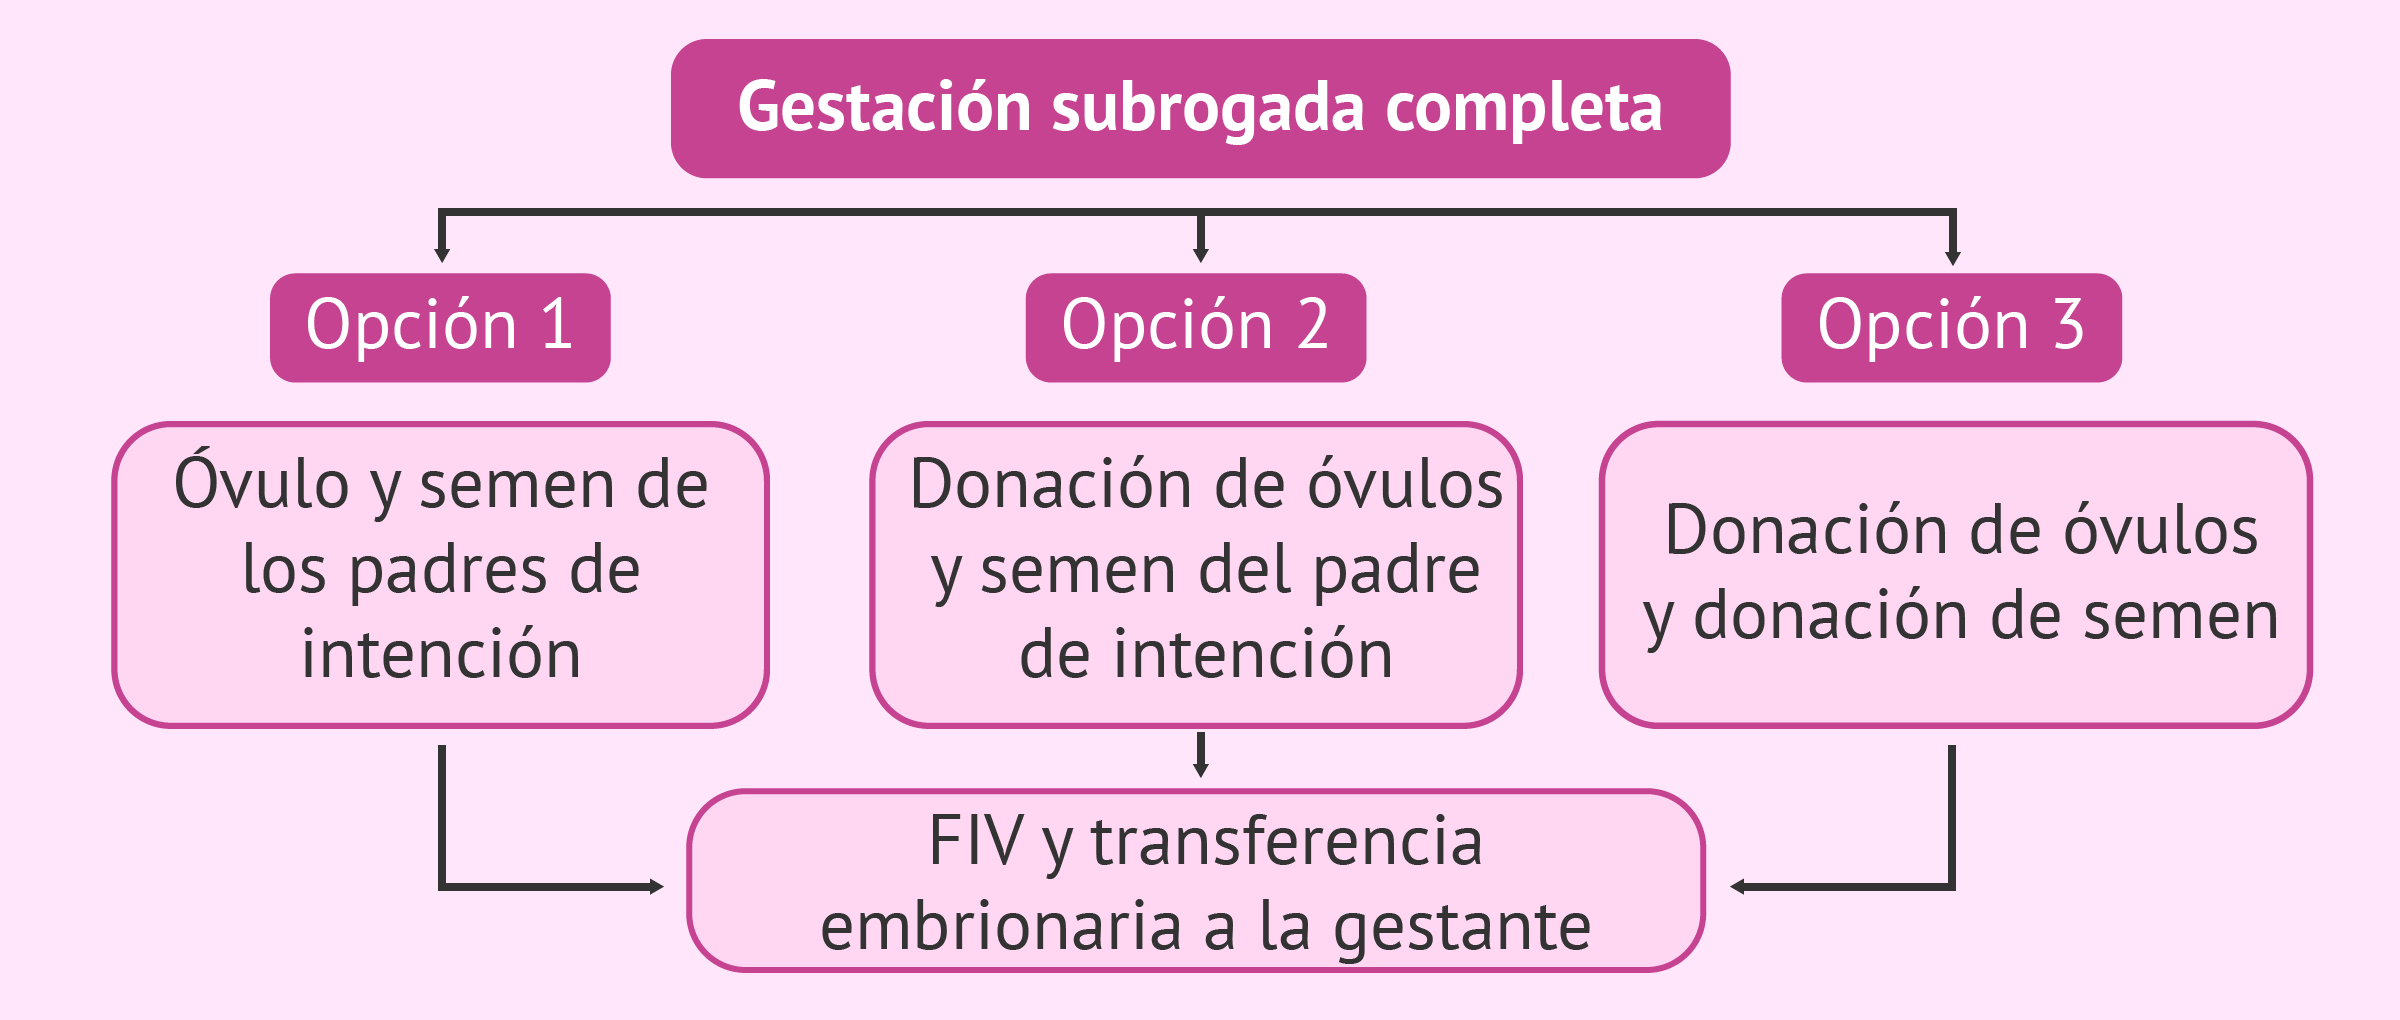 Combinaciones posibles en gestación subrogada completa